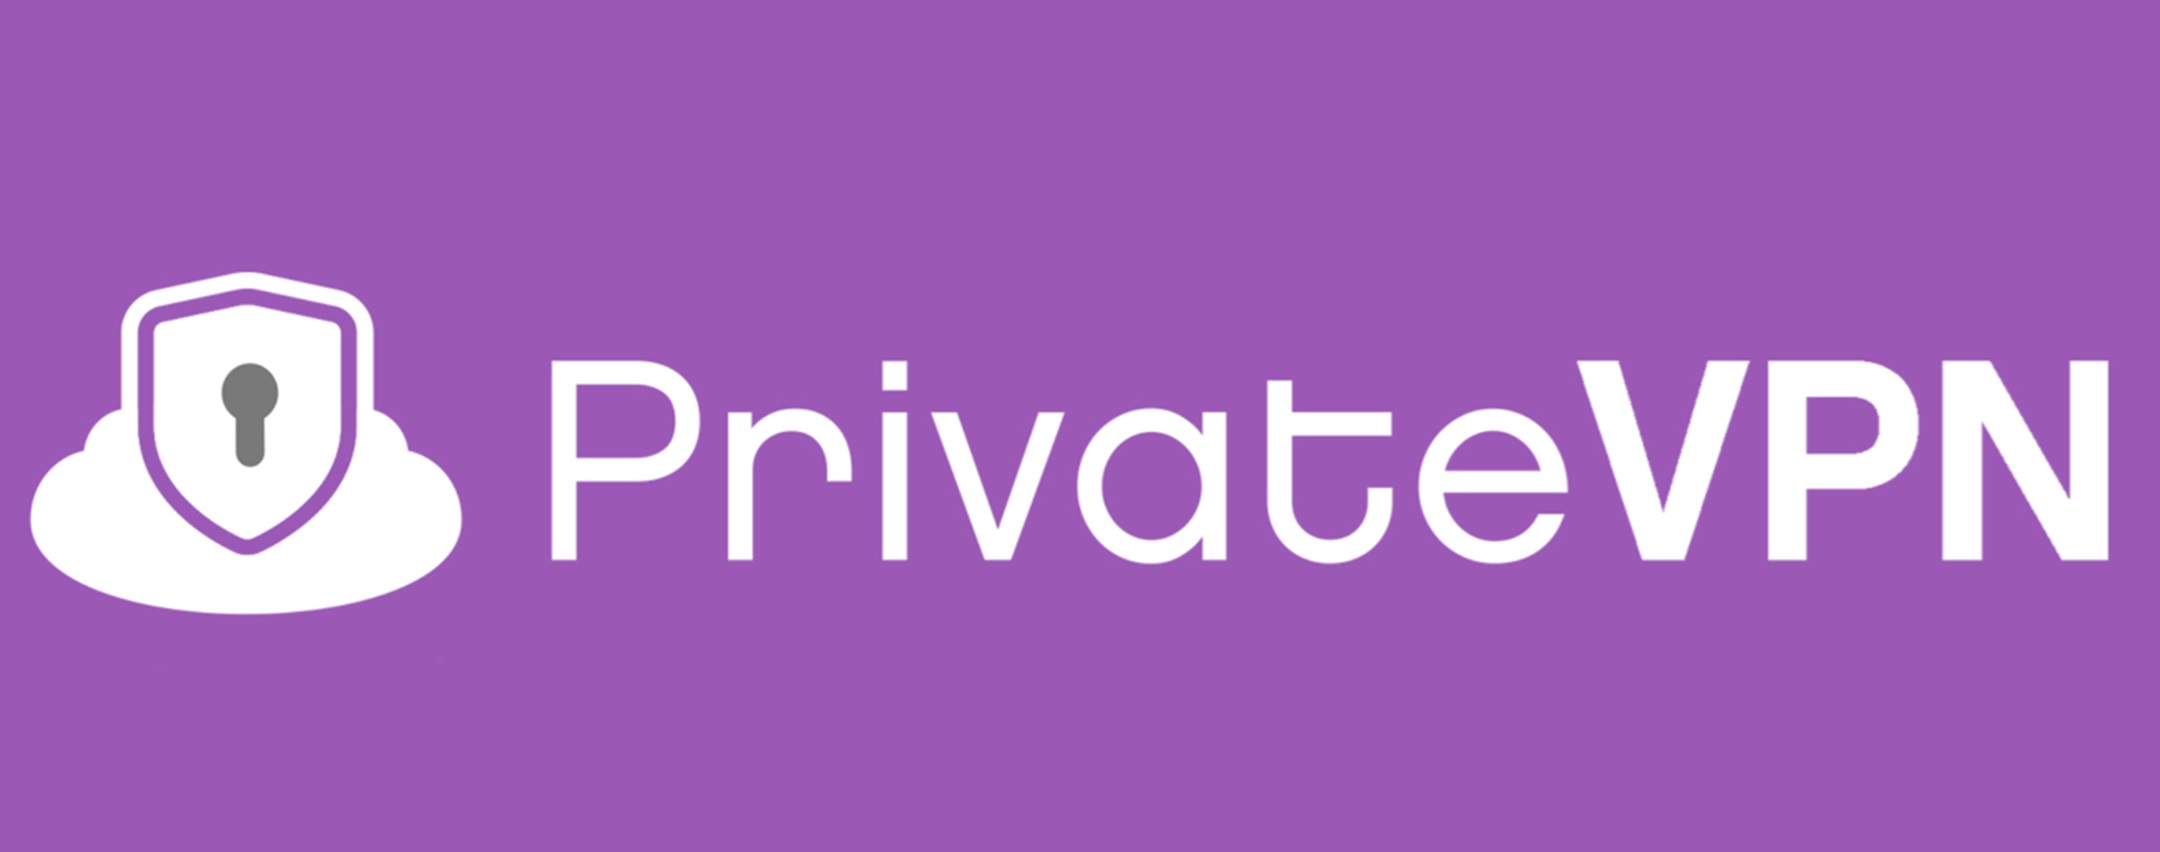 PrivateVPN: la super offerta di 3 anni a 2,08 euro al mese è online - Webnews